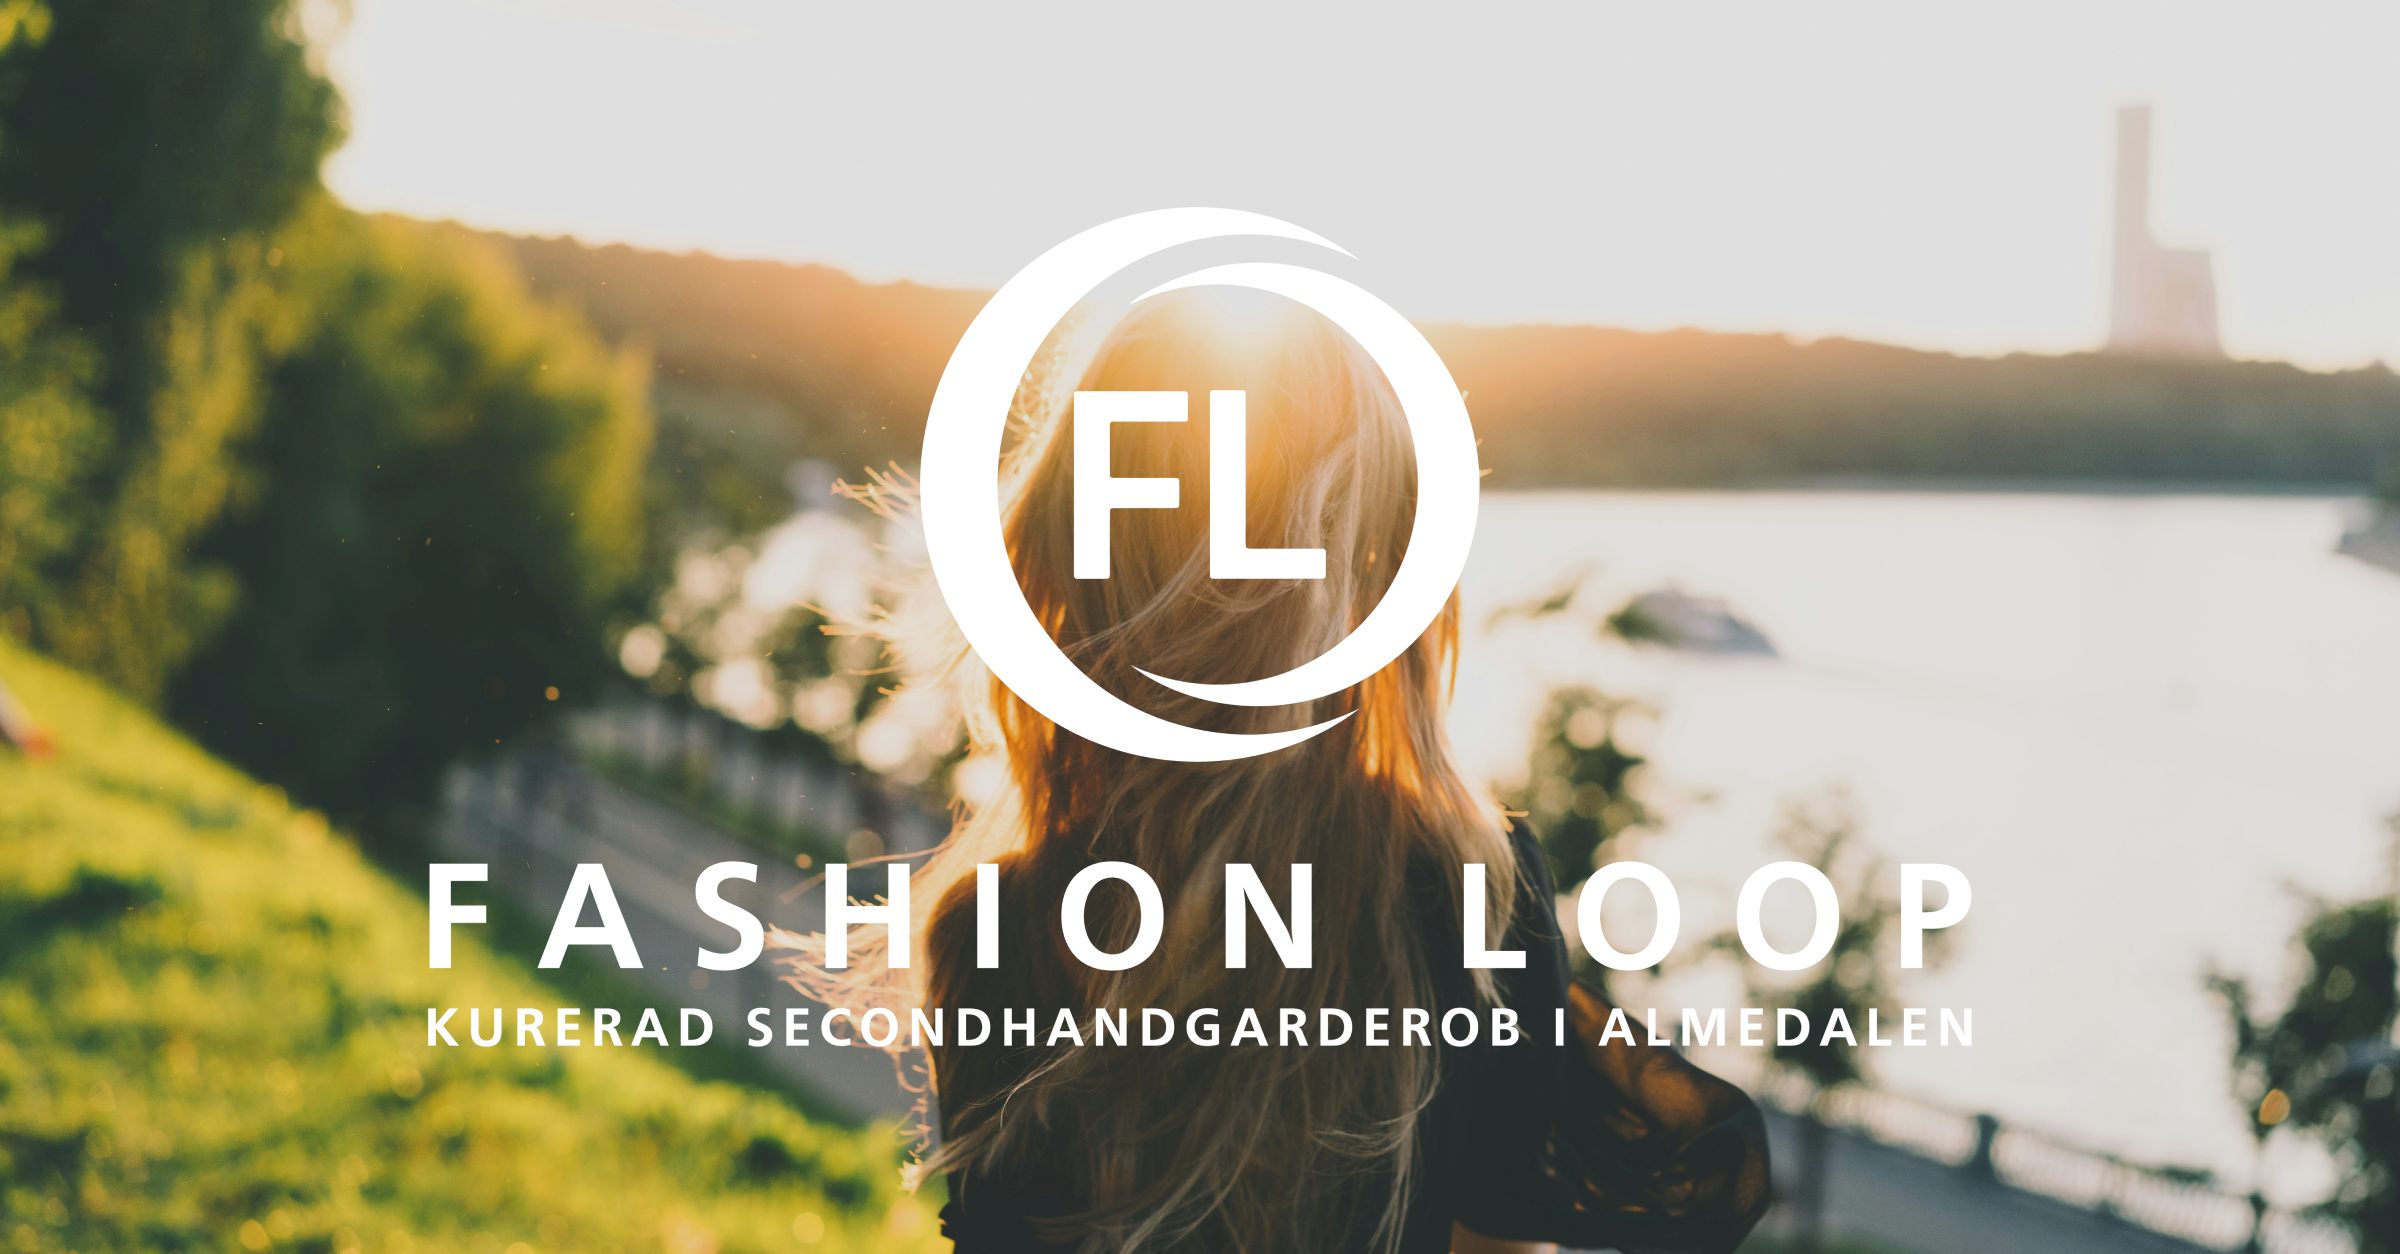 Köp inget nytt, låna från Fashion Loop Almedalen - en kurerad secondhandgarderob